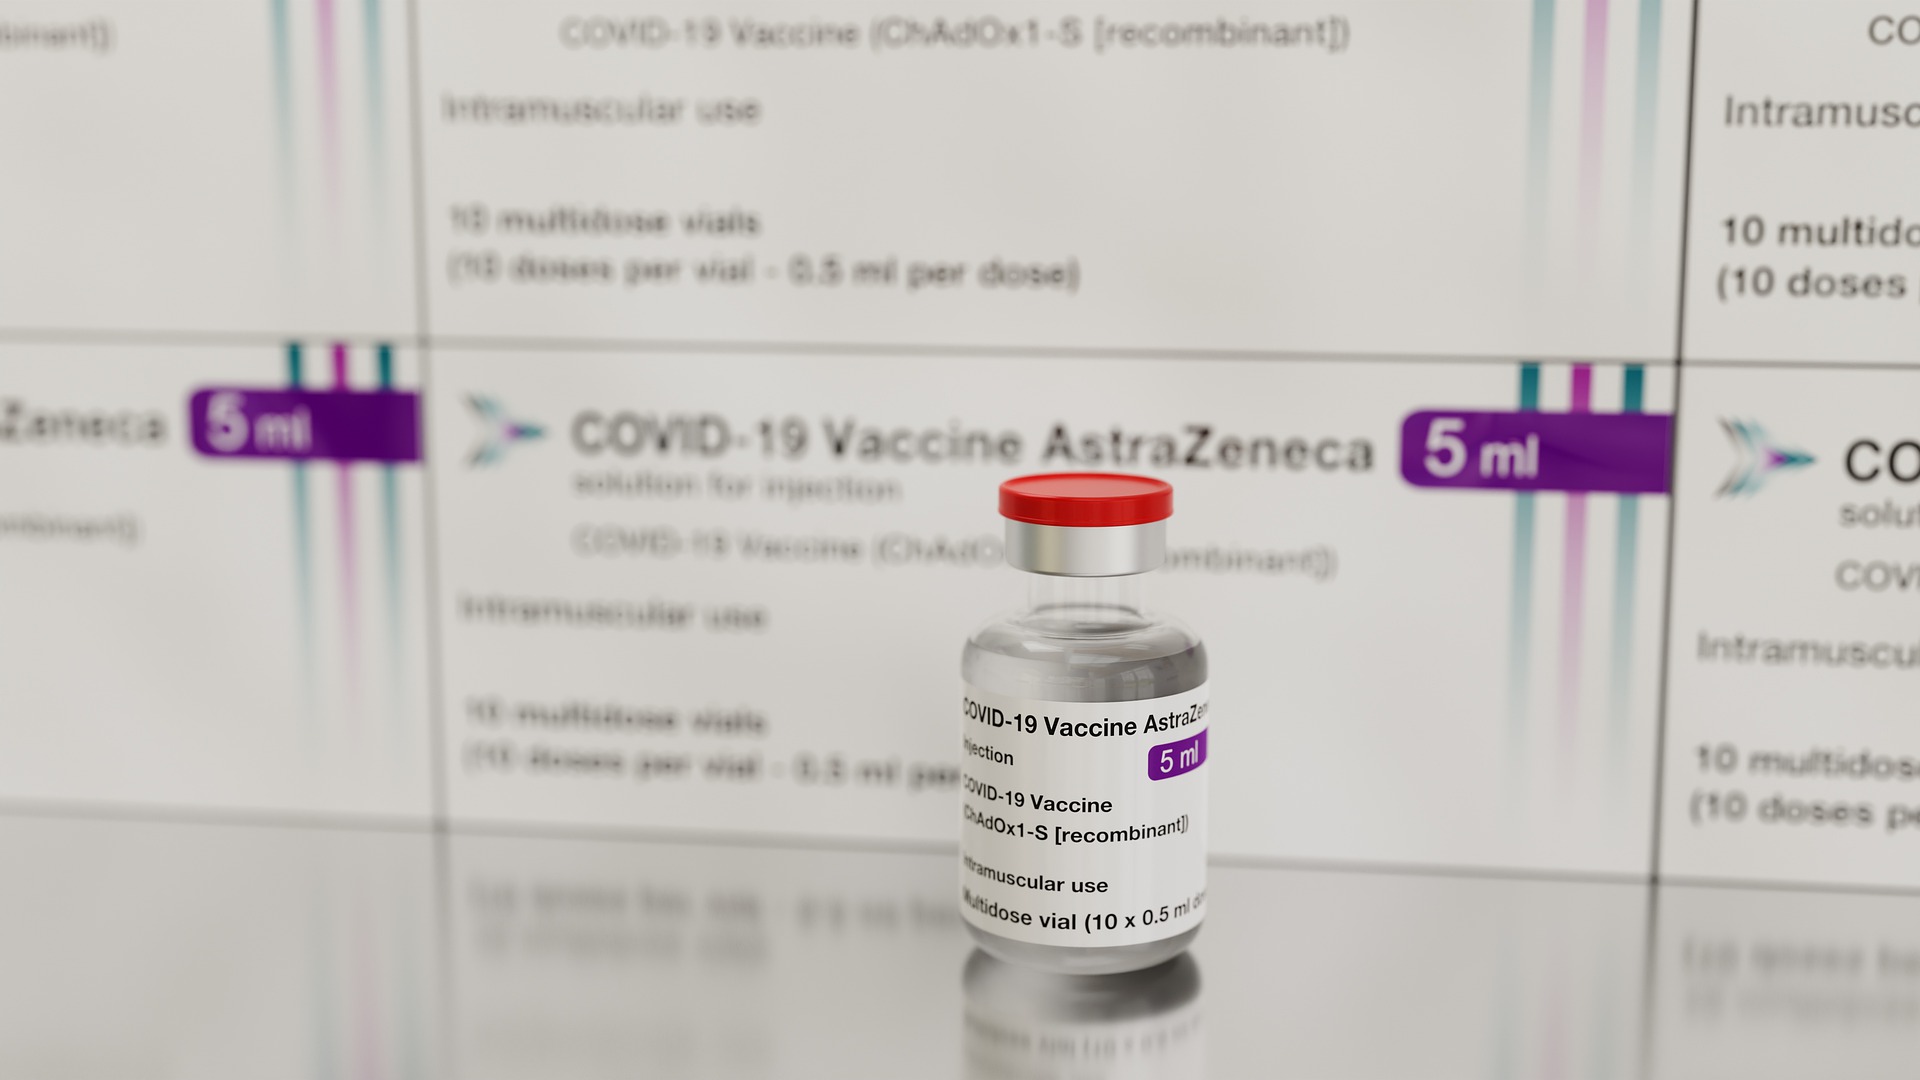 AstraZenecin koktel lijekova pokazuje obećavajuće rezultate u liječenju COVID-19